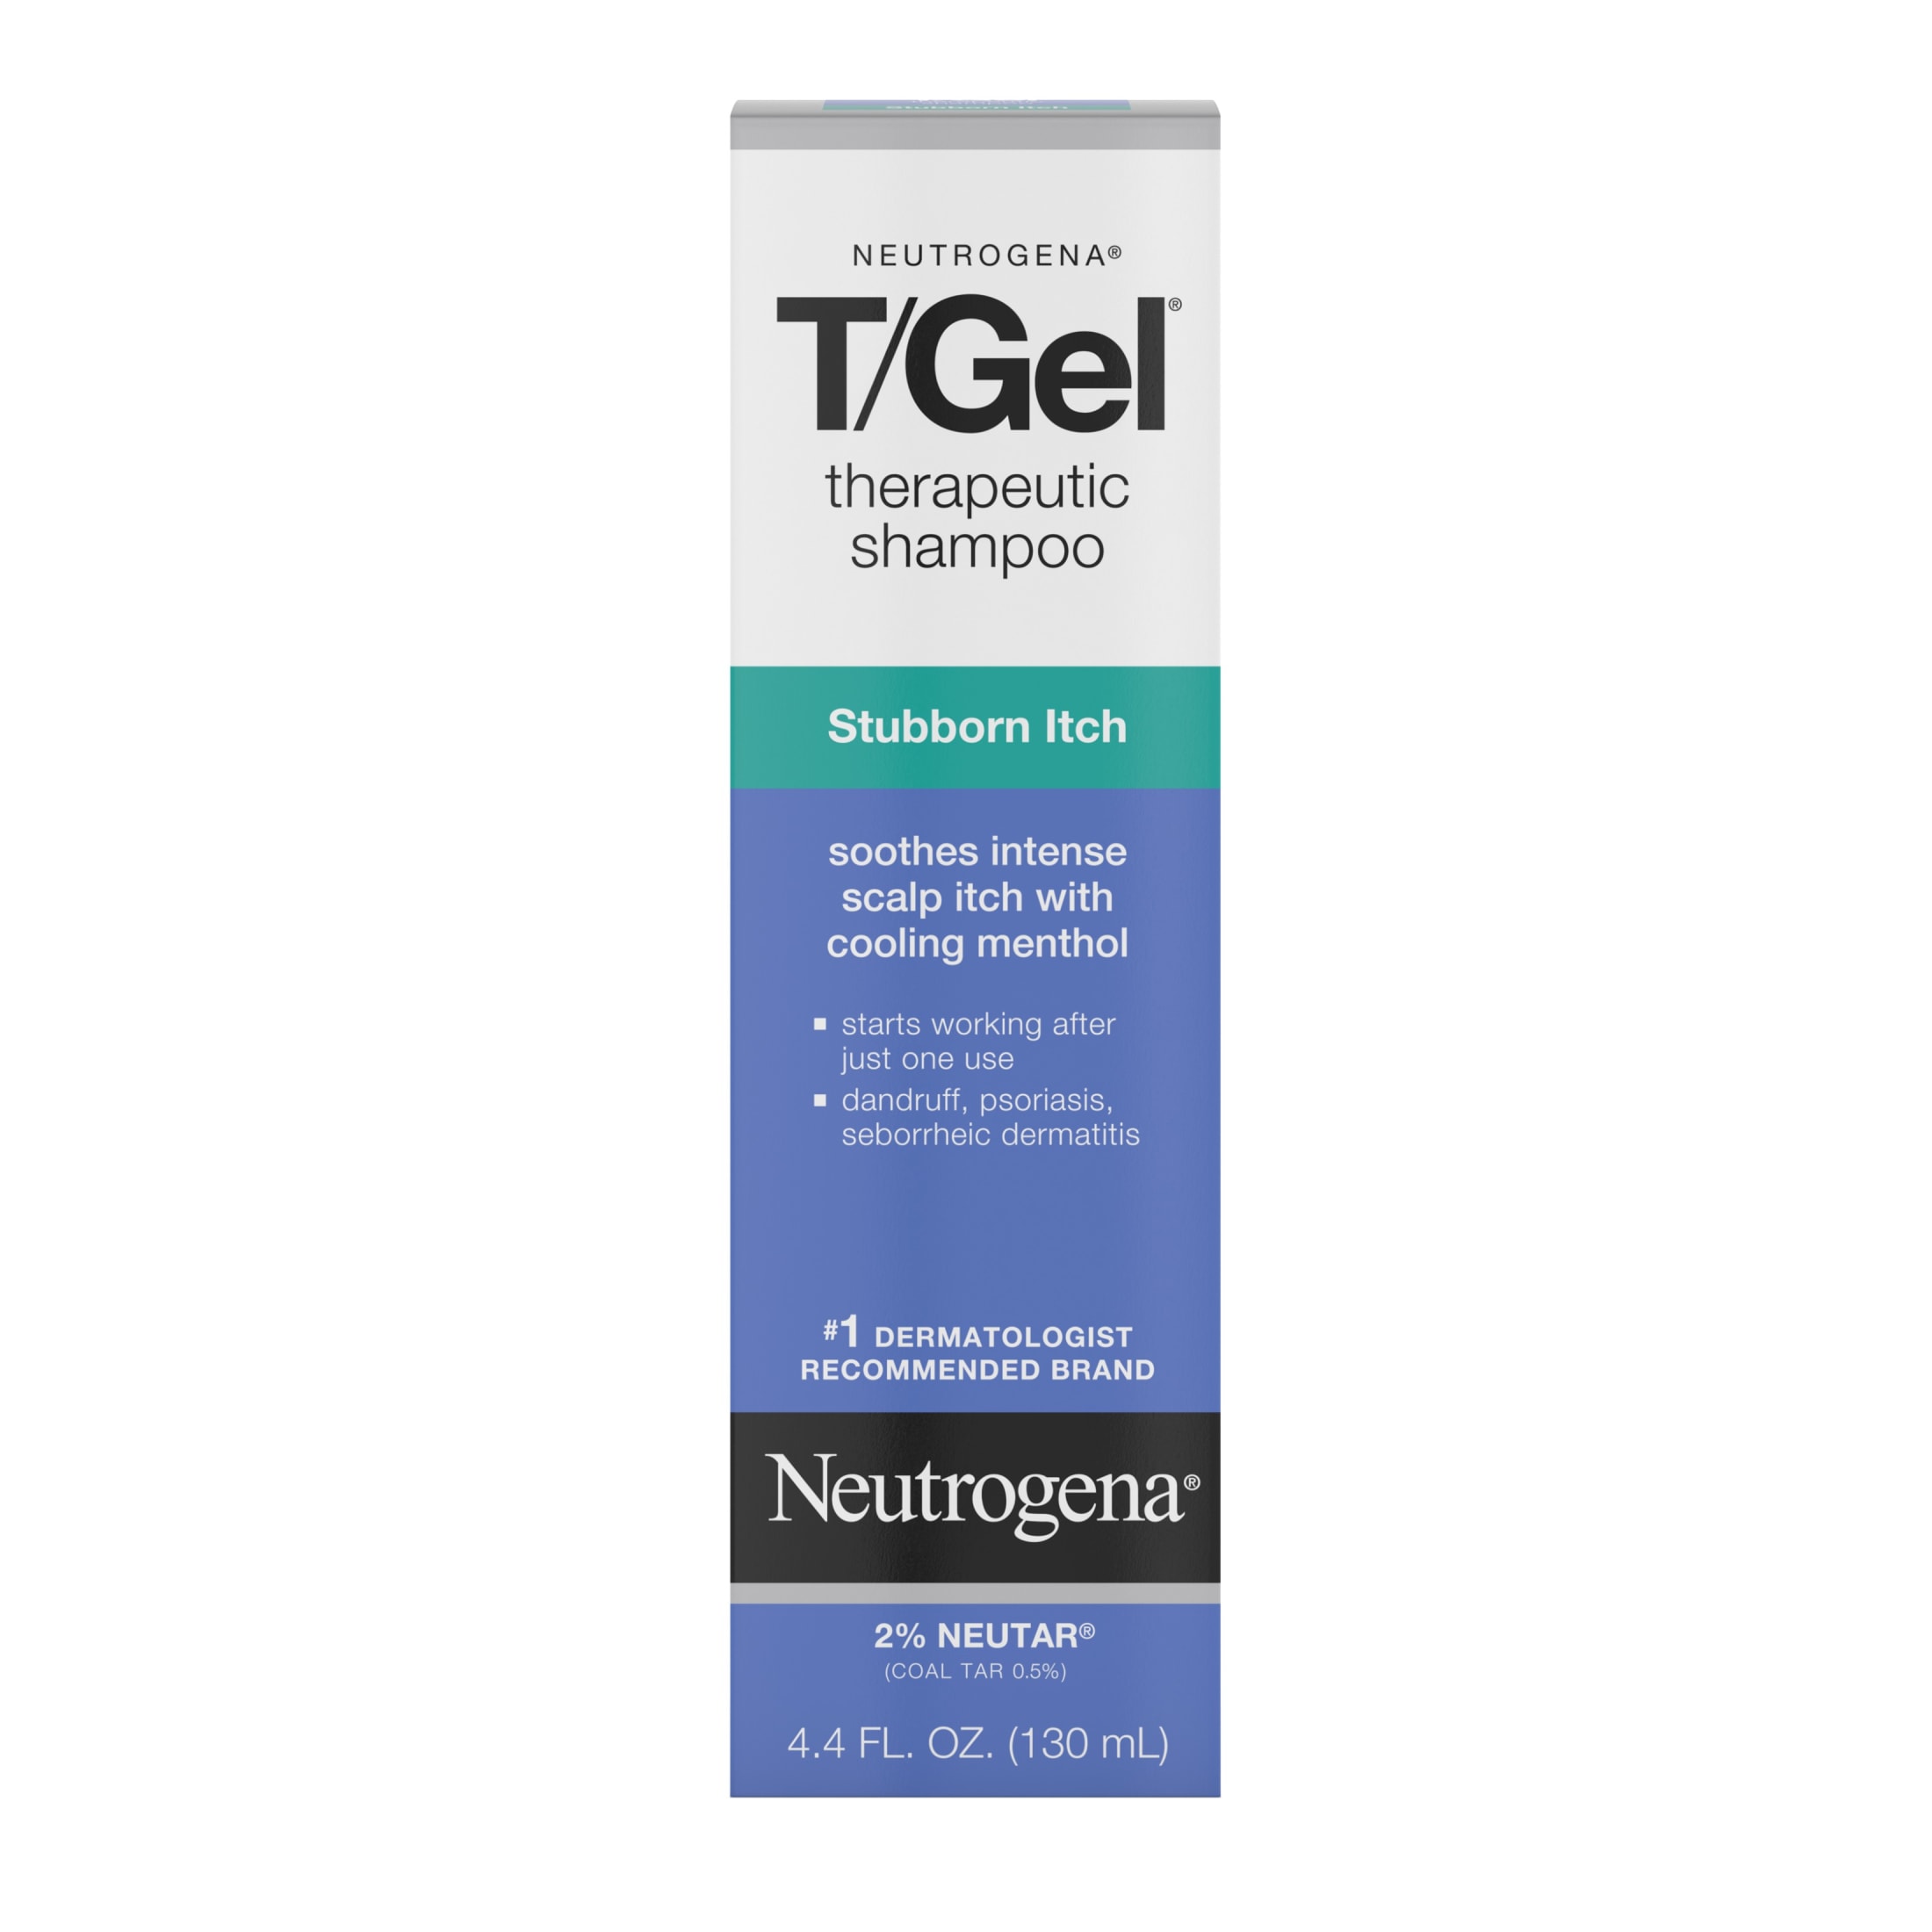 Neutrogena T/Gel Stubborn Itch Therapeutic Dandruff Shampoo, 4.4 fl. oz - image 1 of 12